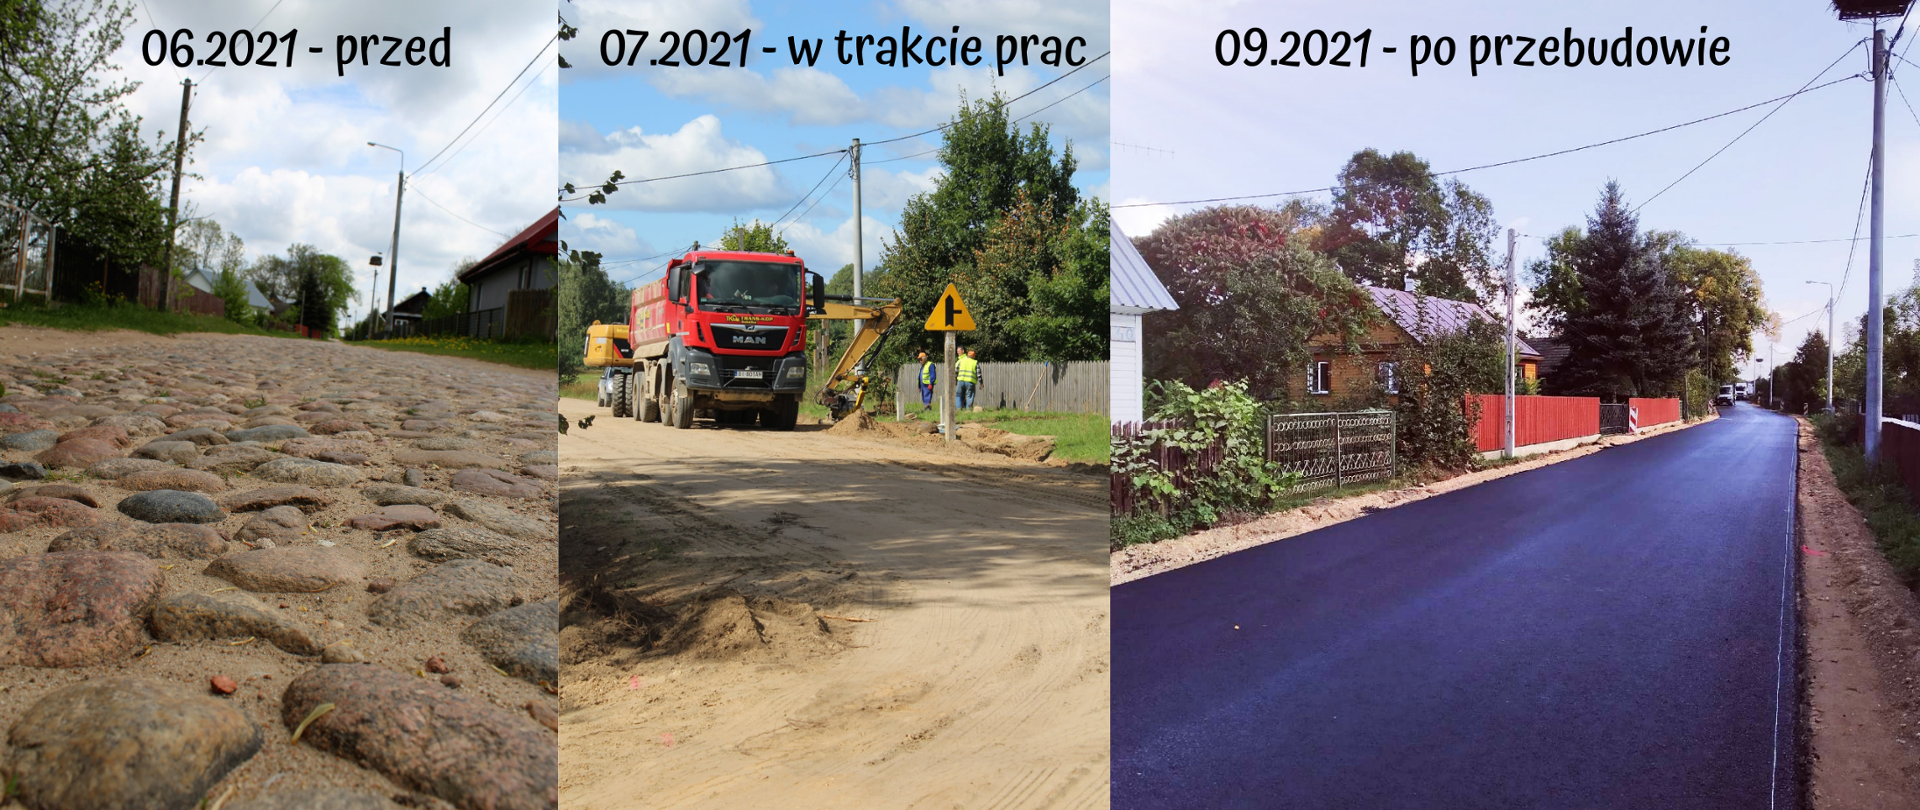 Kolaż 3 zdjęć: od lewej czerwiec 2021 - droga przed pracami - bruk na drodze, lipiec 2021 - droga w trakcie prac - brak bruku, profilowanie drogi, wrzesień 2021 - droga po przebudowie nowy asfalt, wyrównane pobocza.